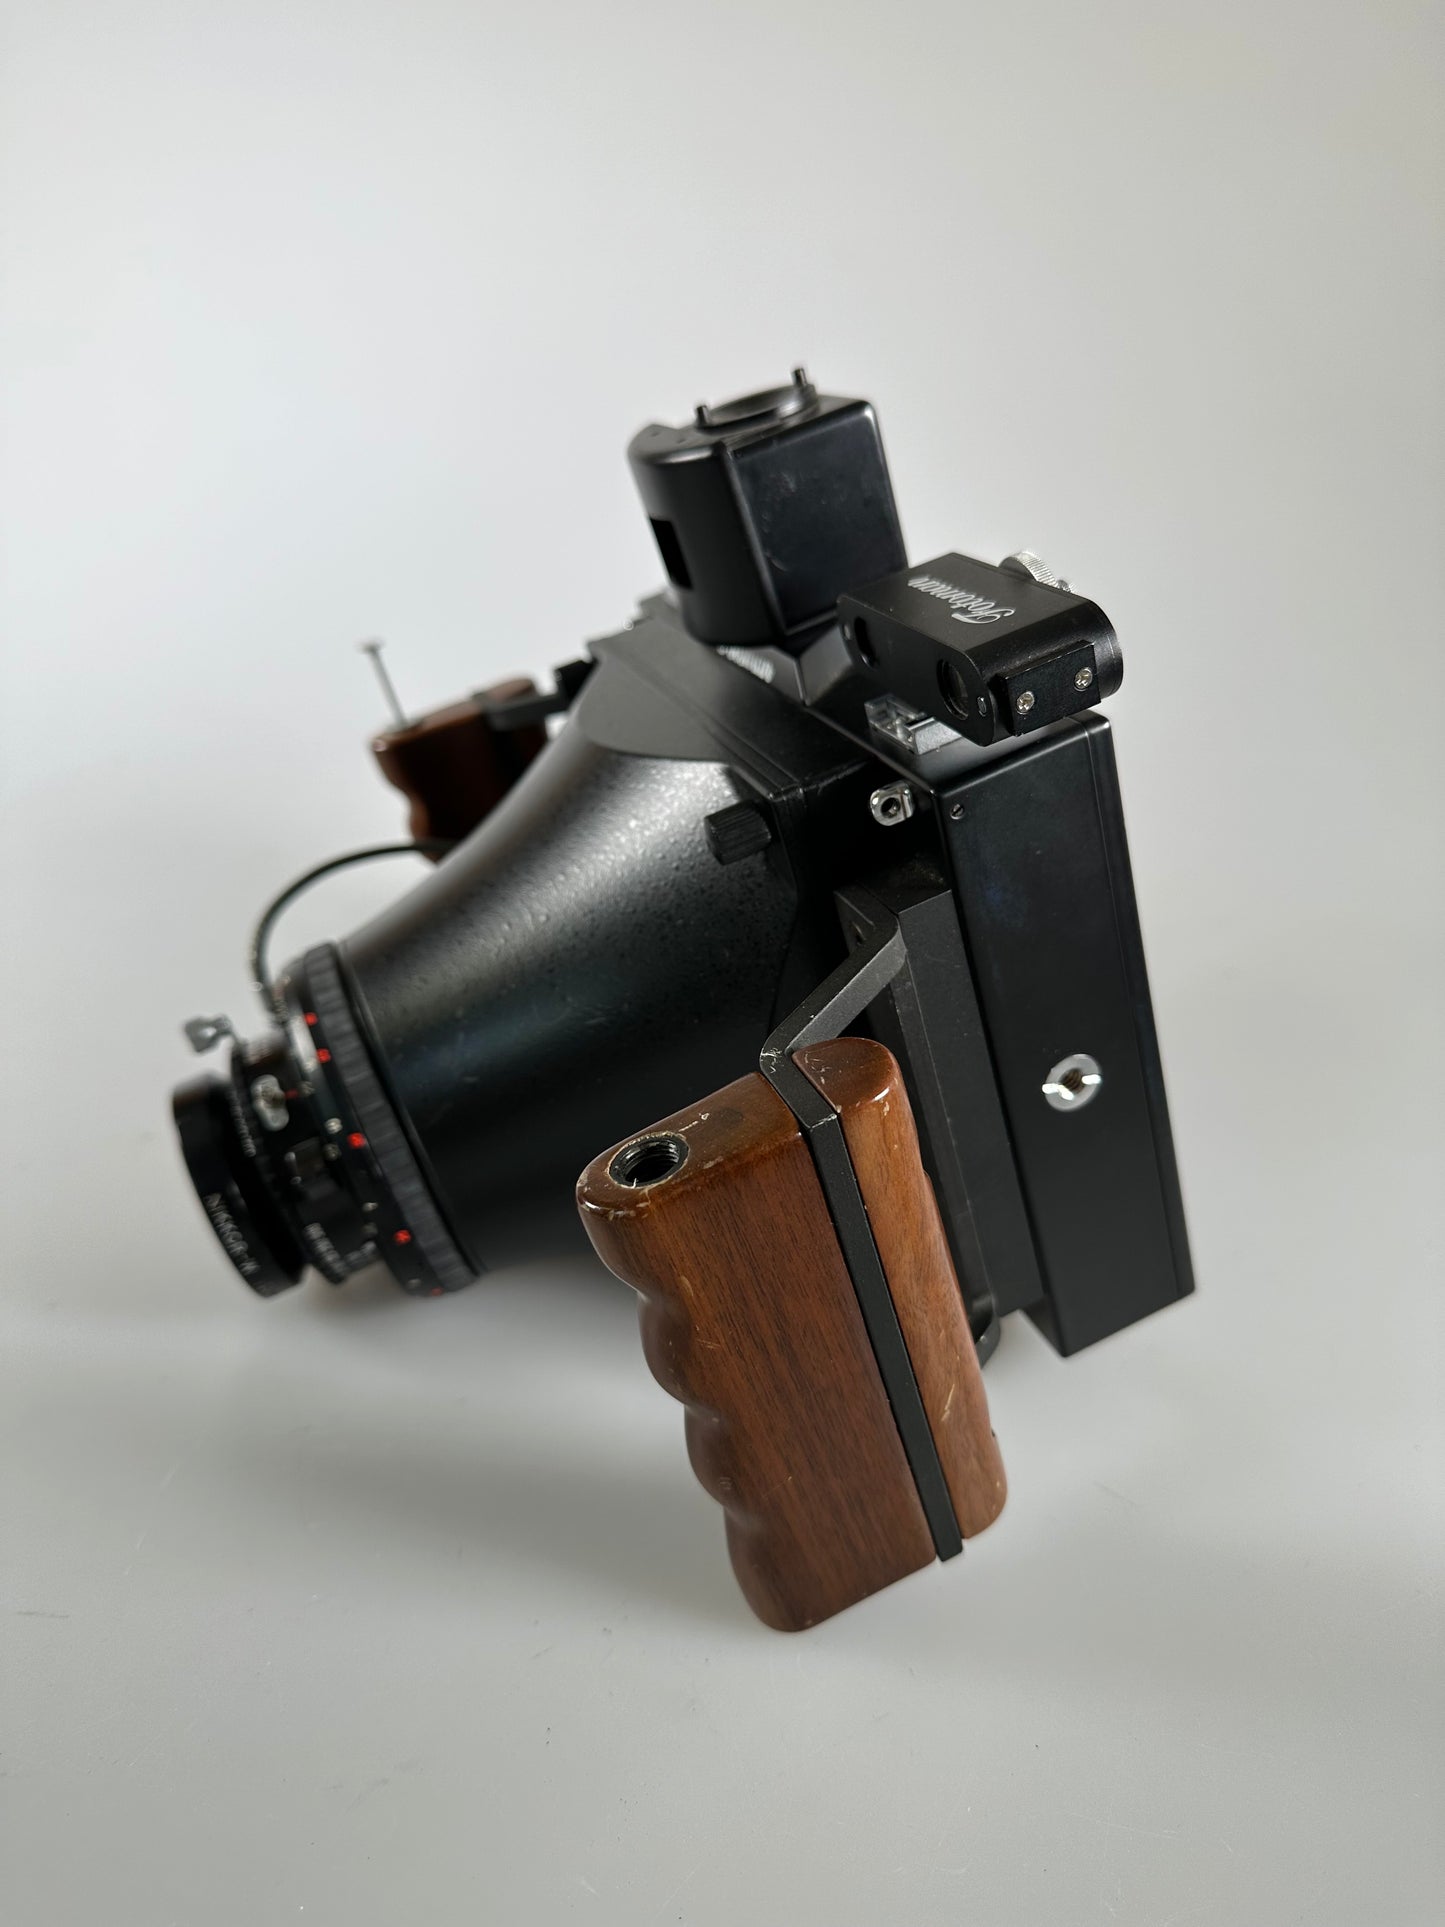 Fotoman 45PS 4x5 large format camera with Nikon 135mm f5.6 lens, finder, rangefinder